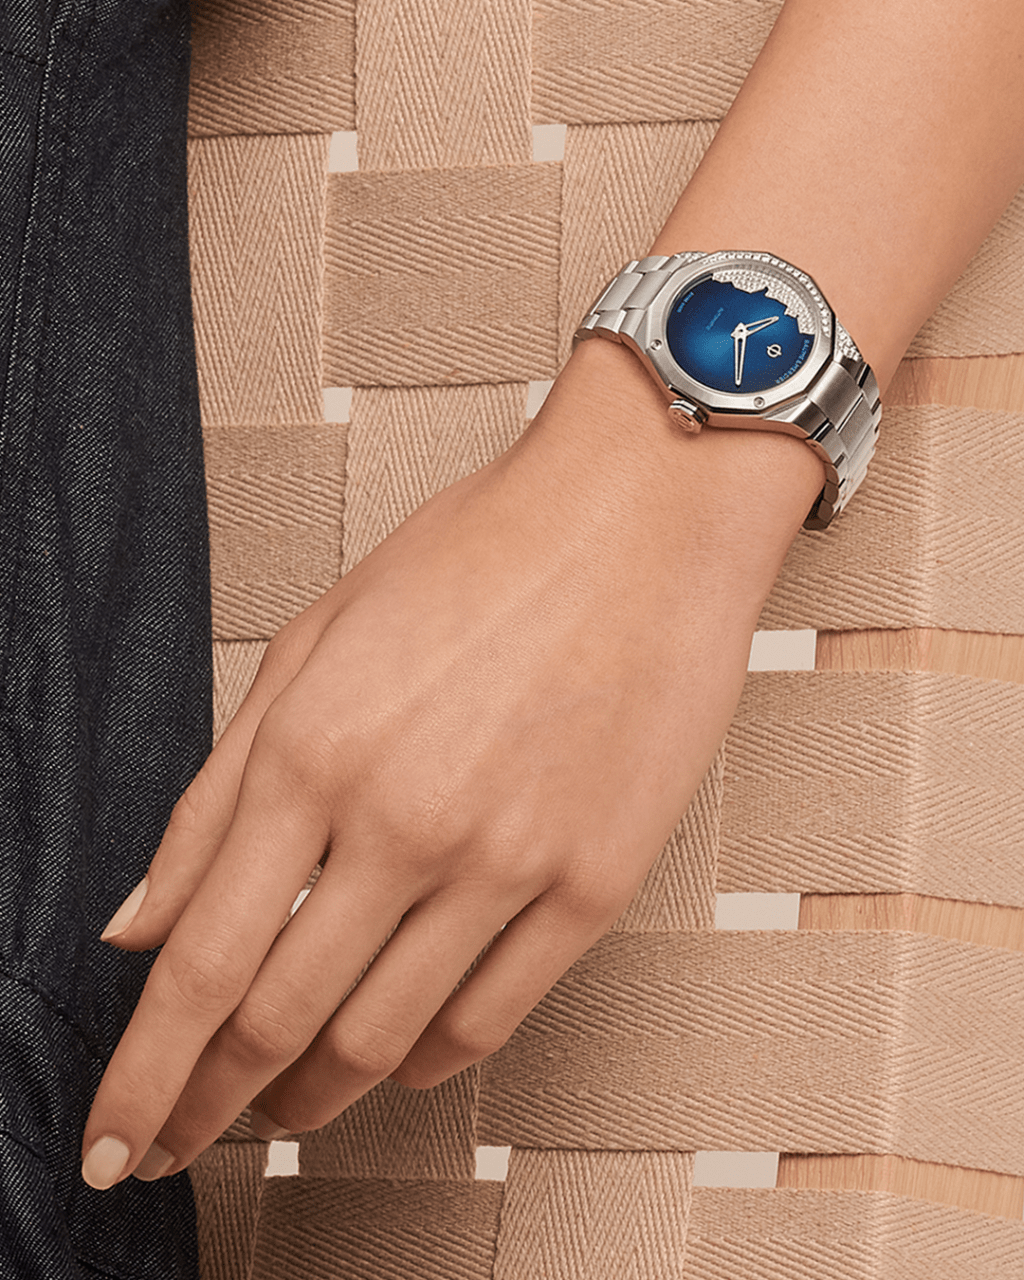 利維拉系列不忘推出女士腕錶,反而於 2022 年更是加把勁傾情呈獻多款能